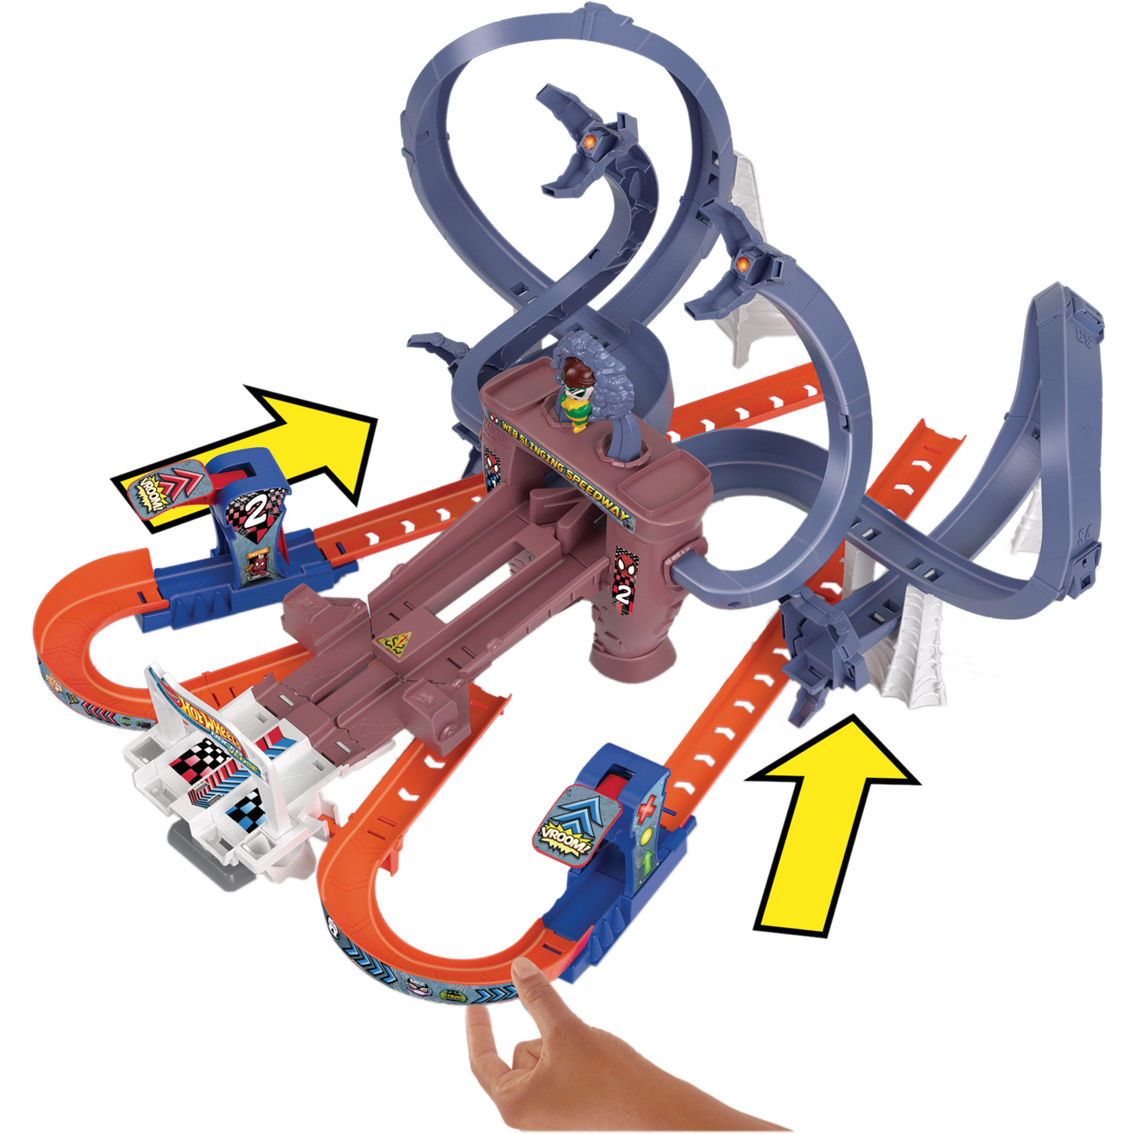 Hot Wheels Racerverse Spider-Man's Web Slinging Speedway Track Set - Image 5 of 9